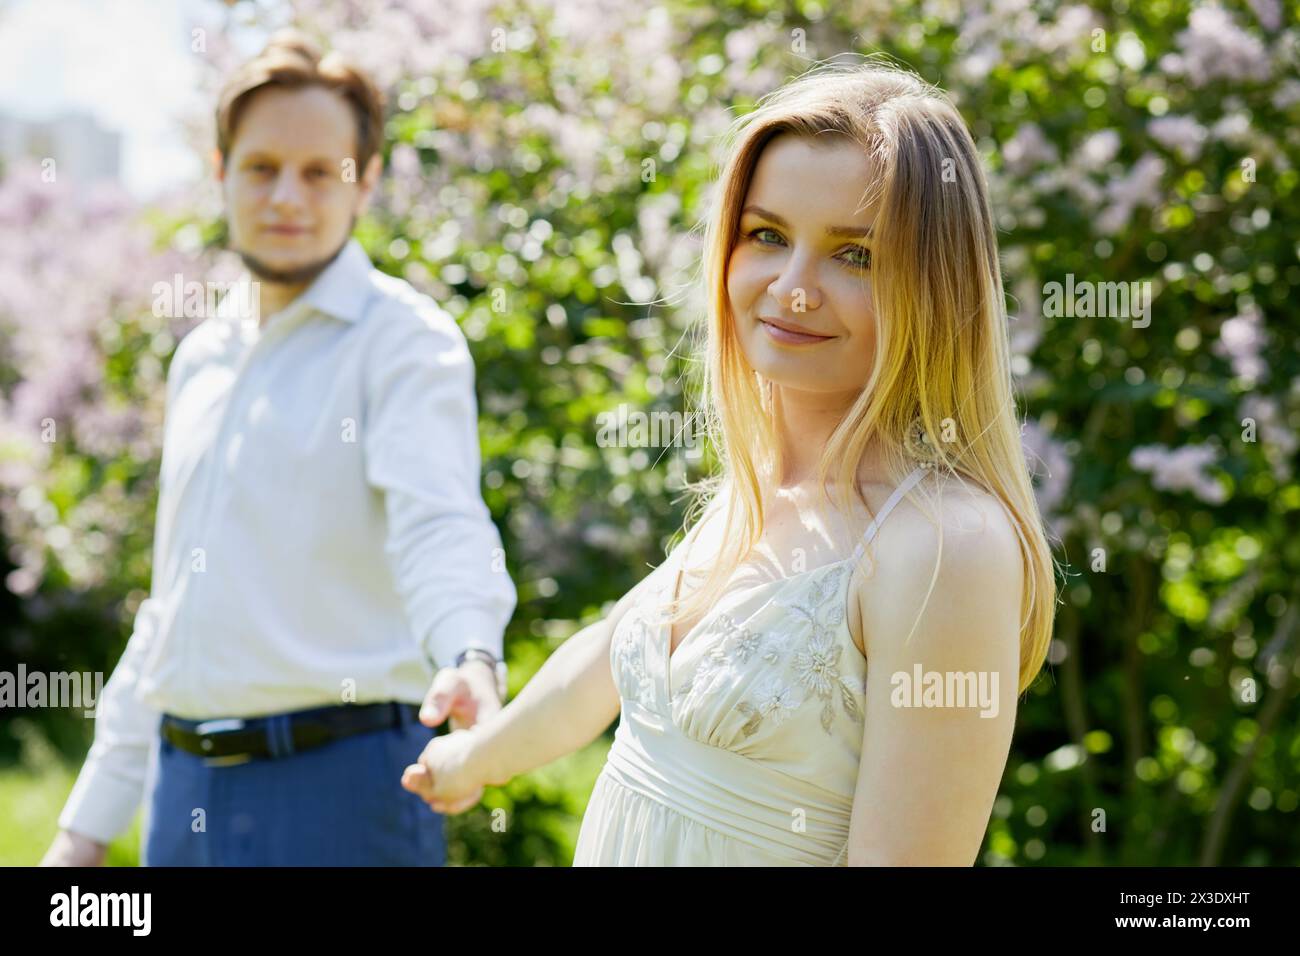 La giovane donna sorridente e l'uomo barbuto stanno tenendo le mani nel parco, concentrati sulla donna. Foto Stock